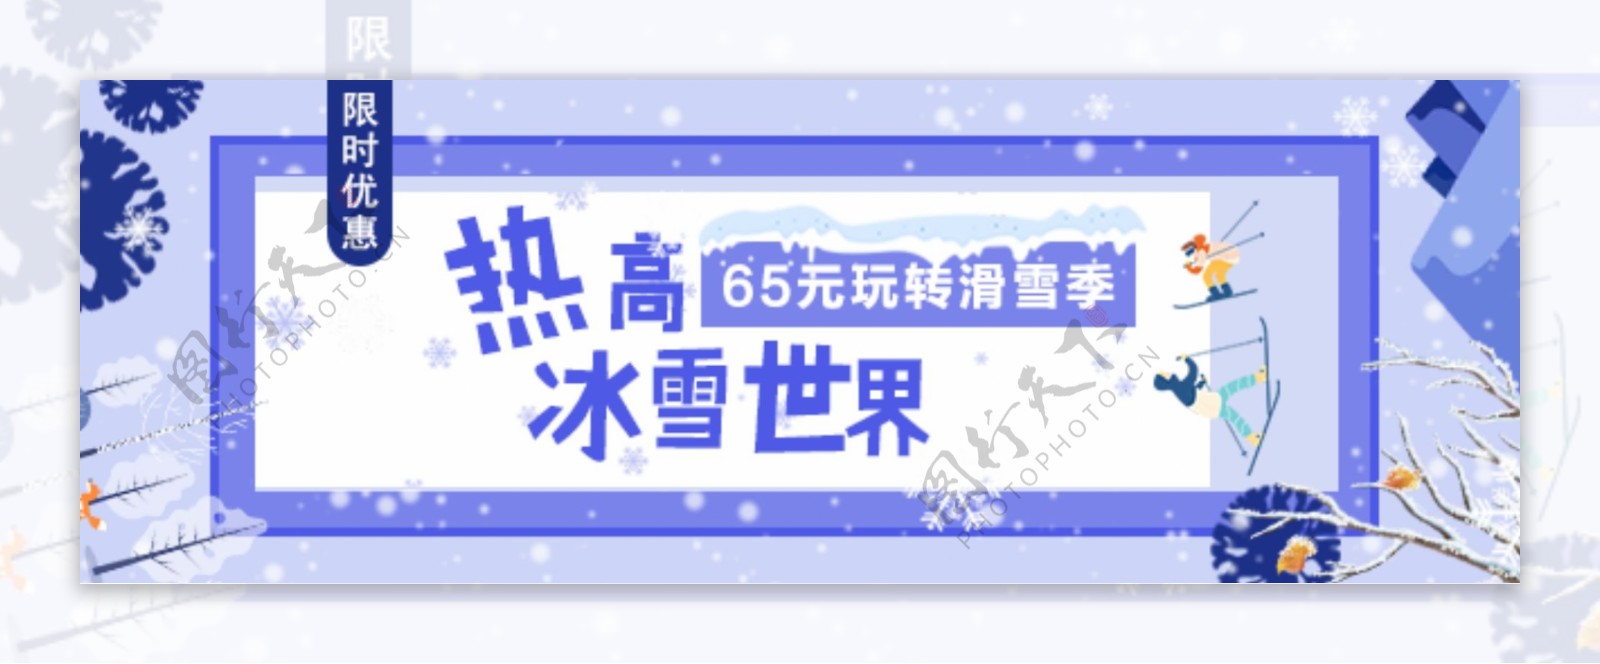 热高冰雪世界banner